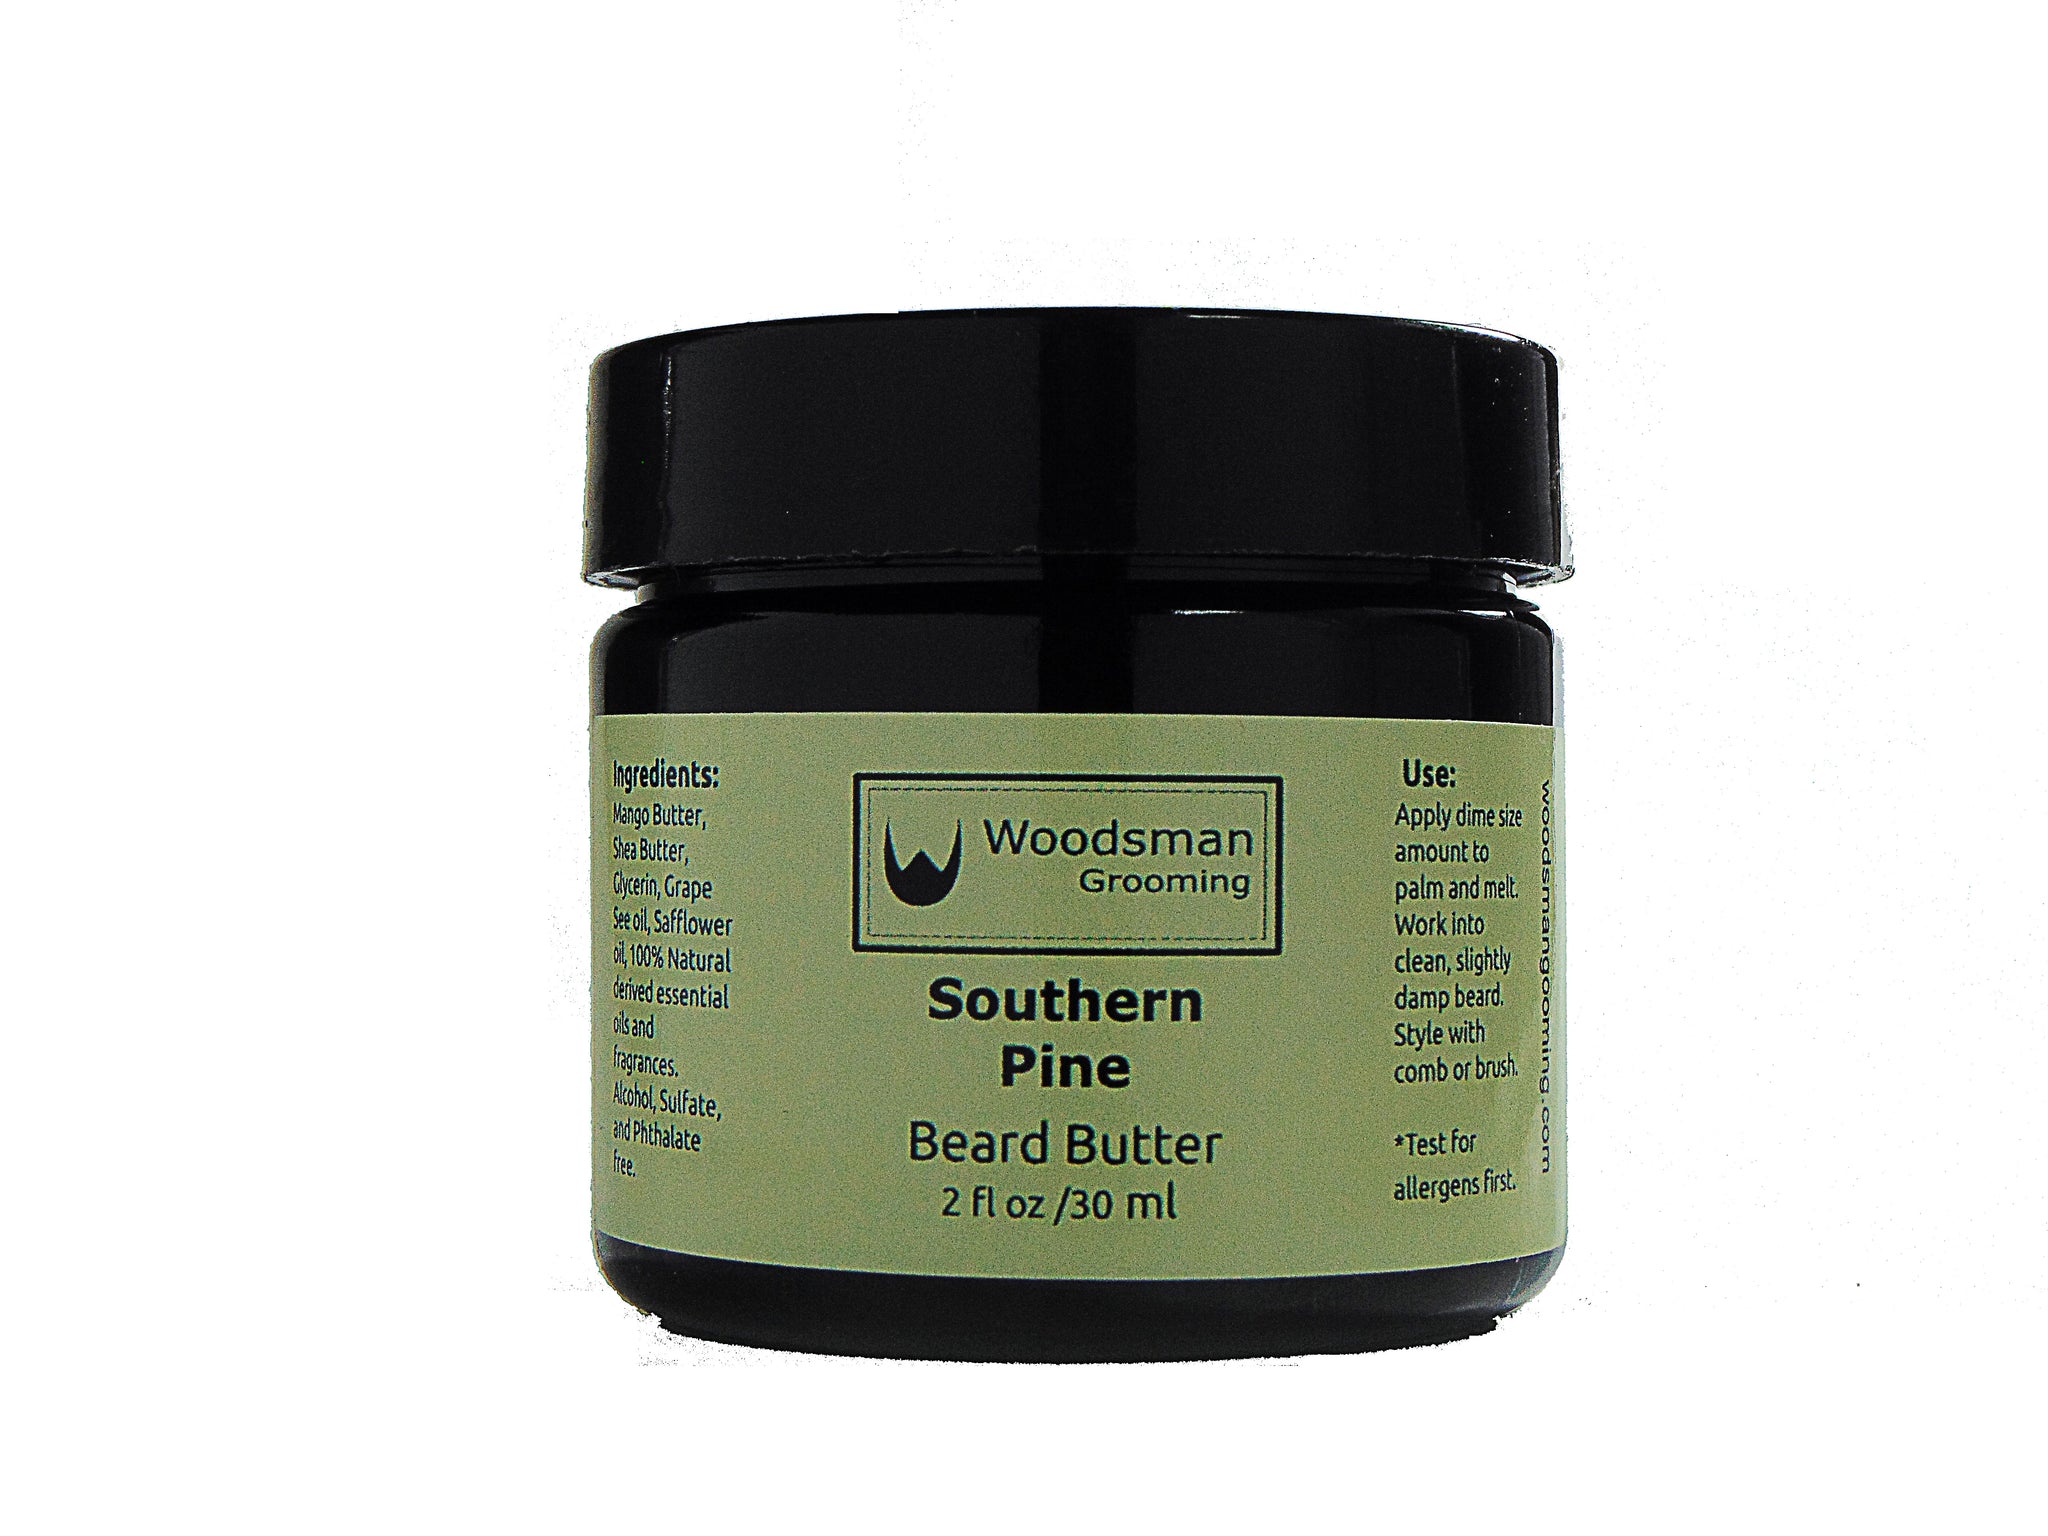 Southern Pine Beard Butter